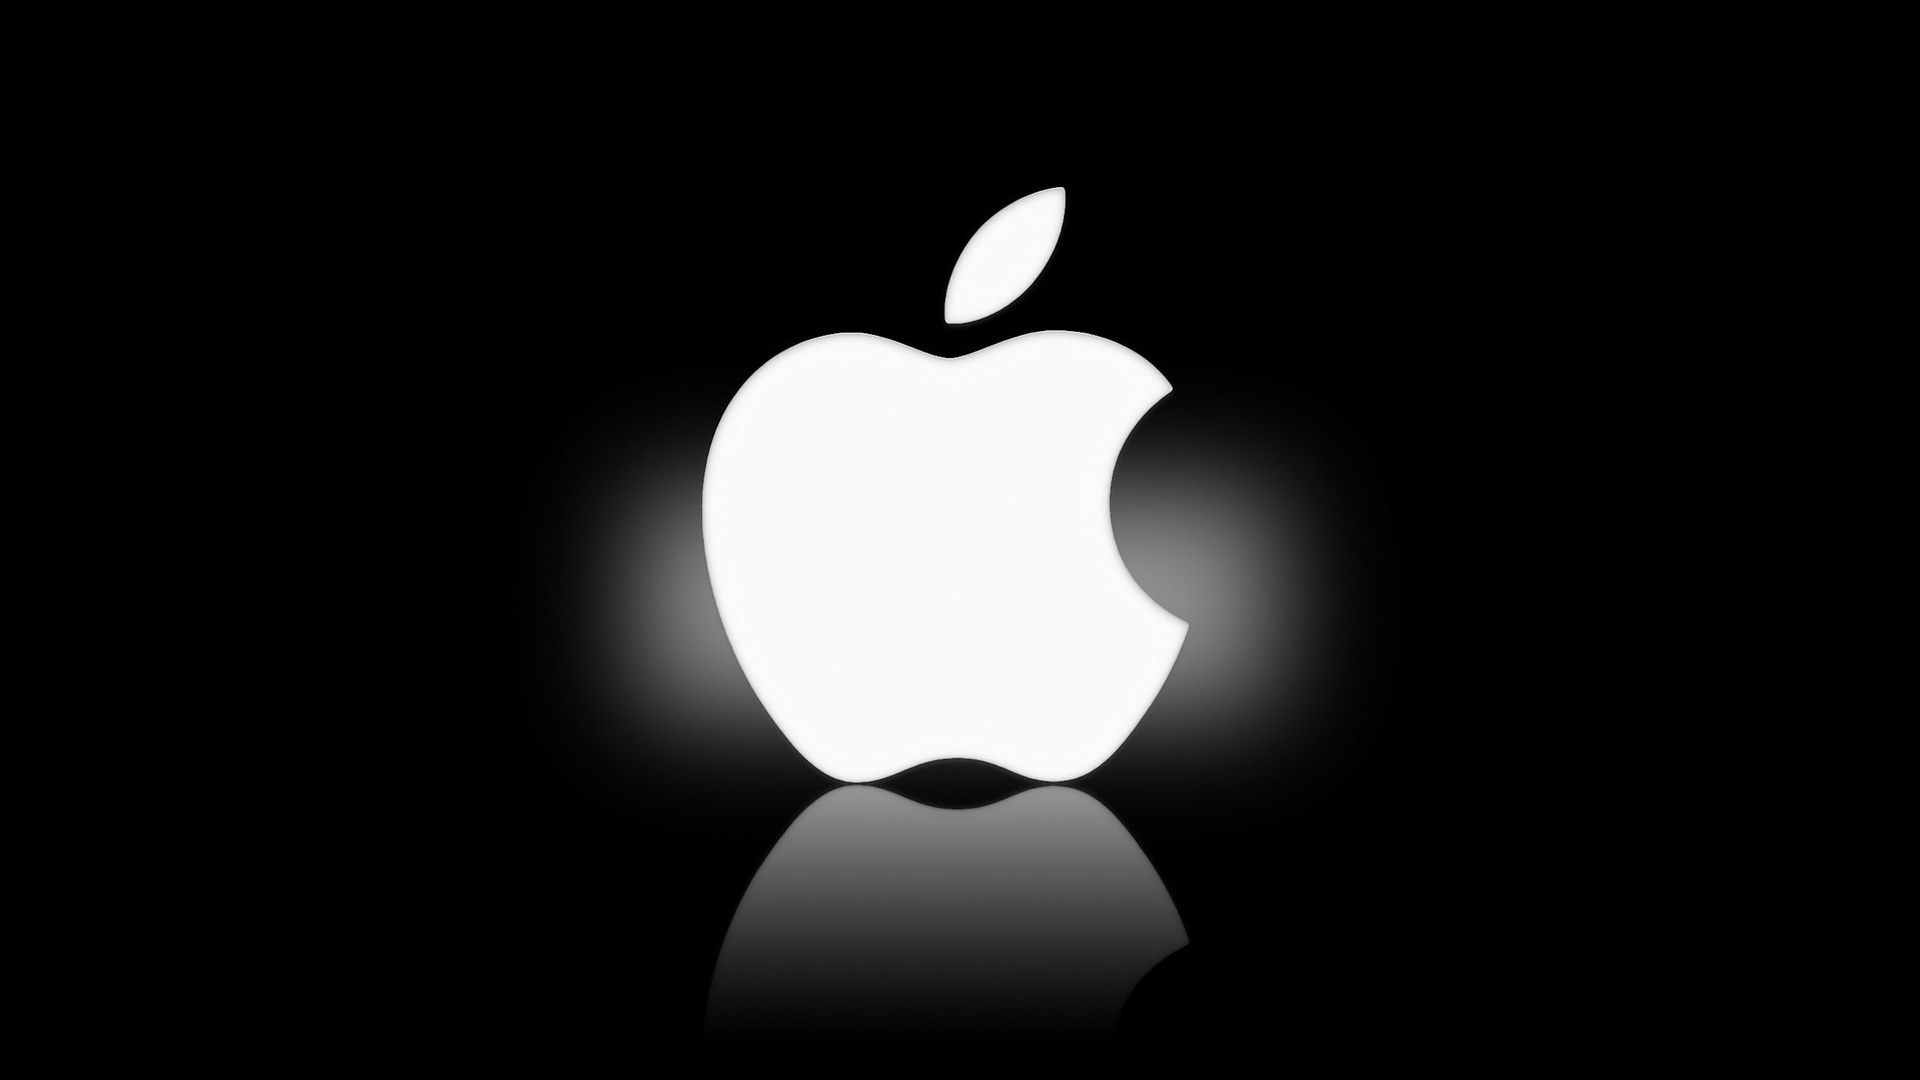 Rubelválság - Az Apple leállította internetes kereskedését, a vásárlók megrohamozták az üzleteket és hiány van új autókból